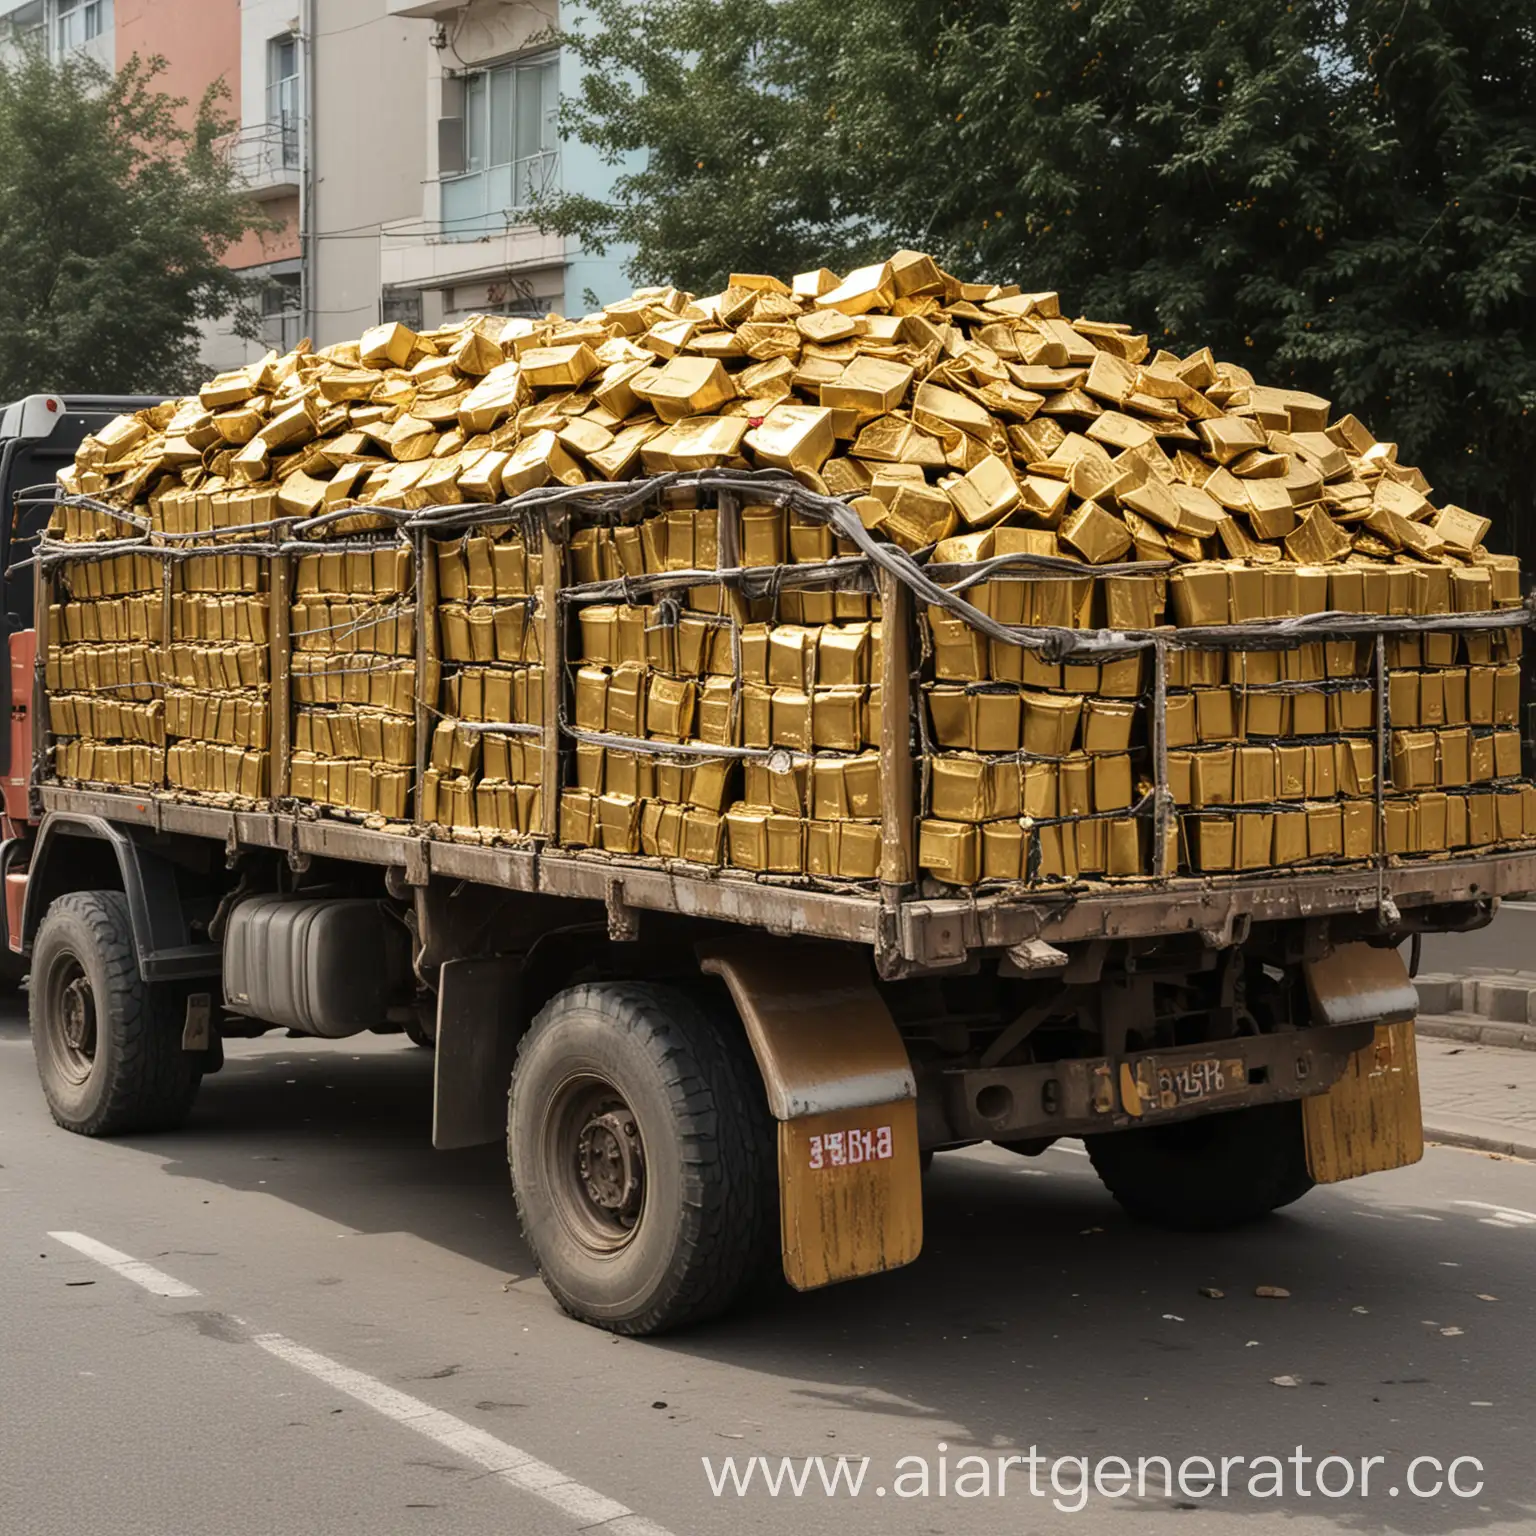 Shiny-Gold-Ingots-Loaded-in-a-Truck